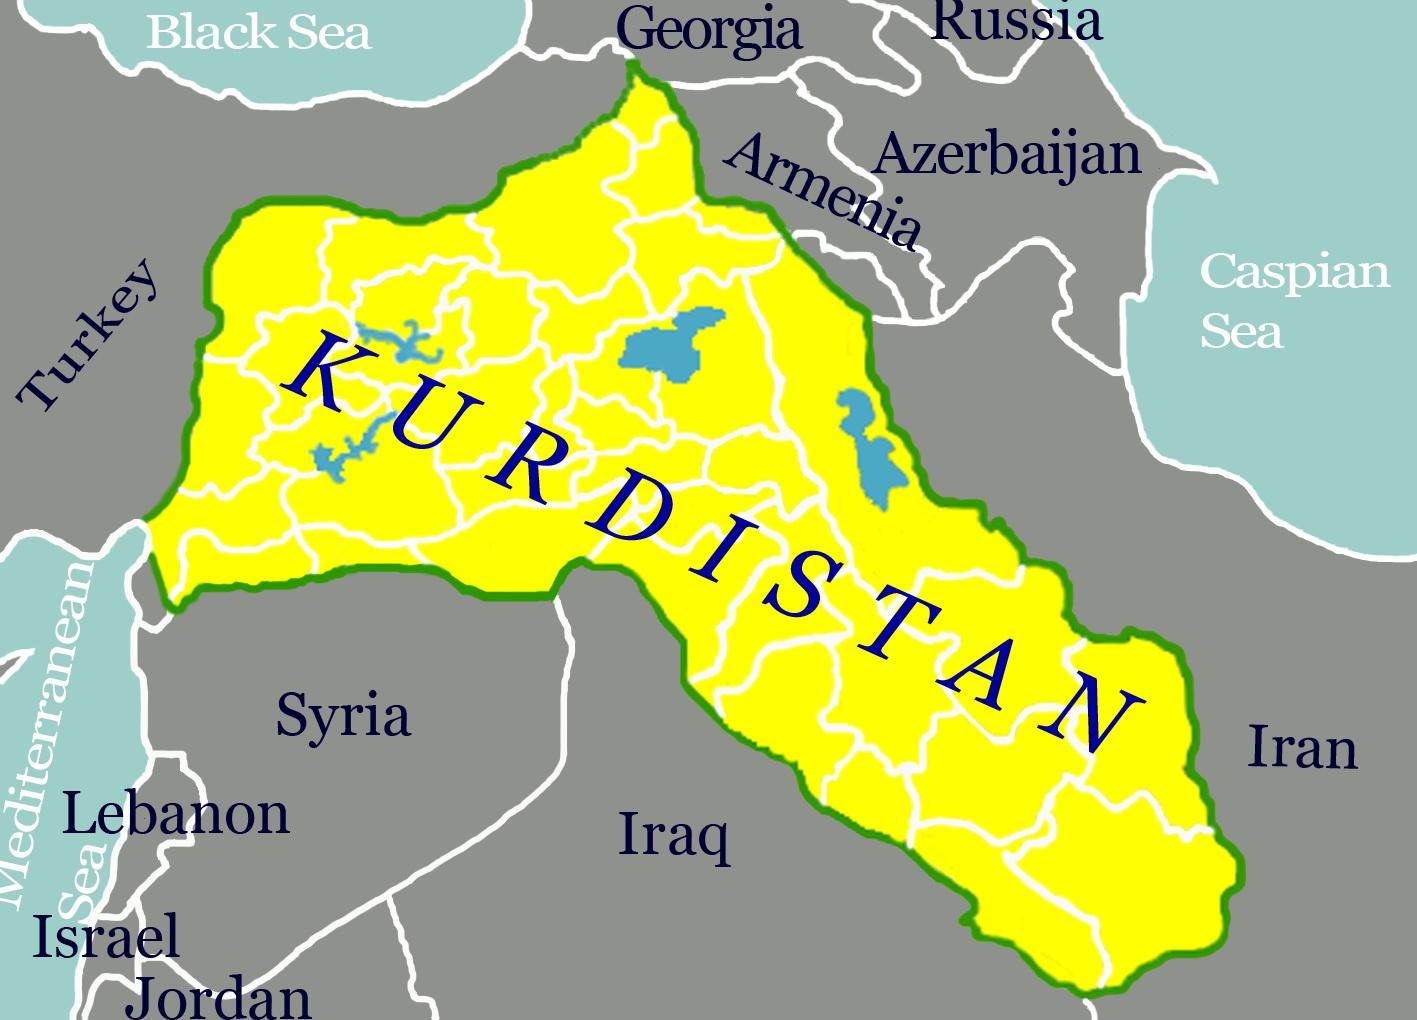 土耳其库尔德地区图片